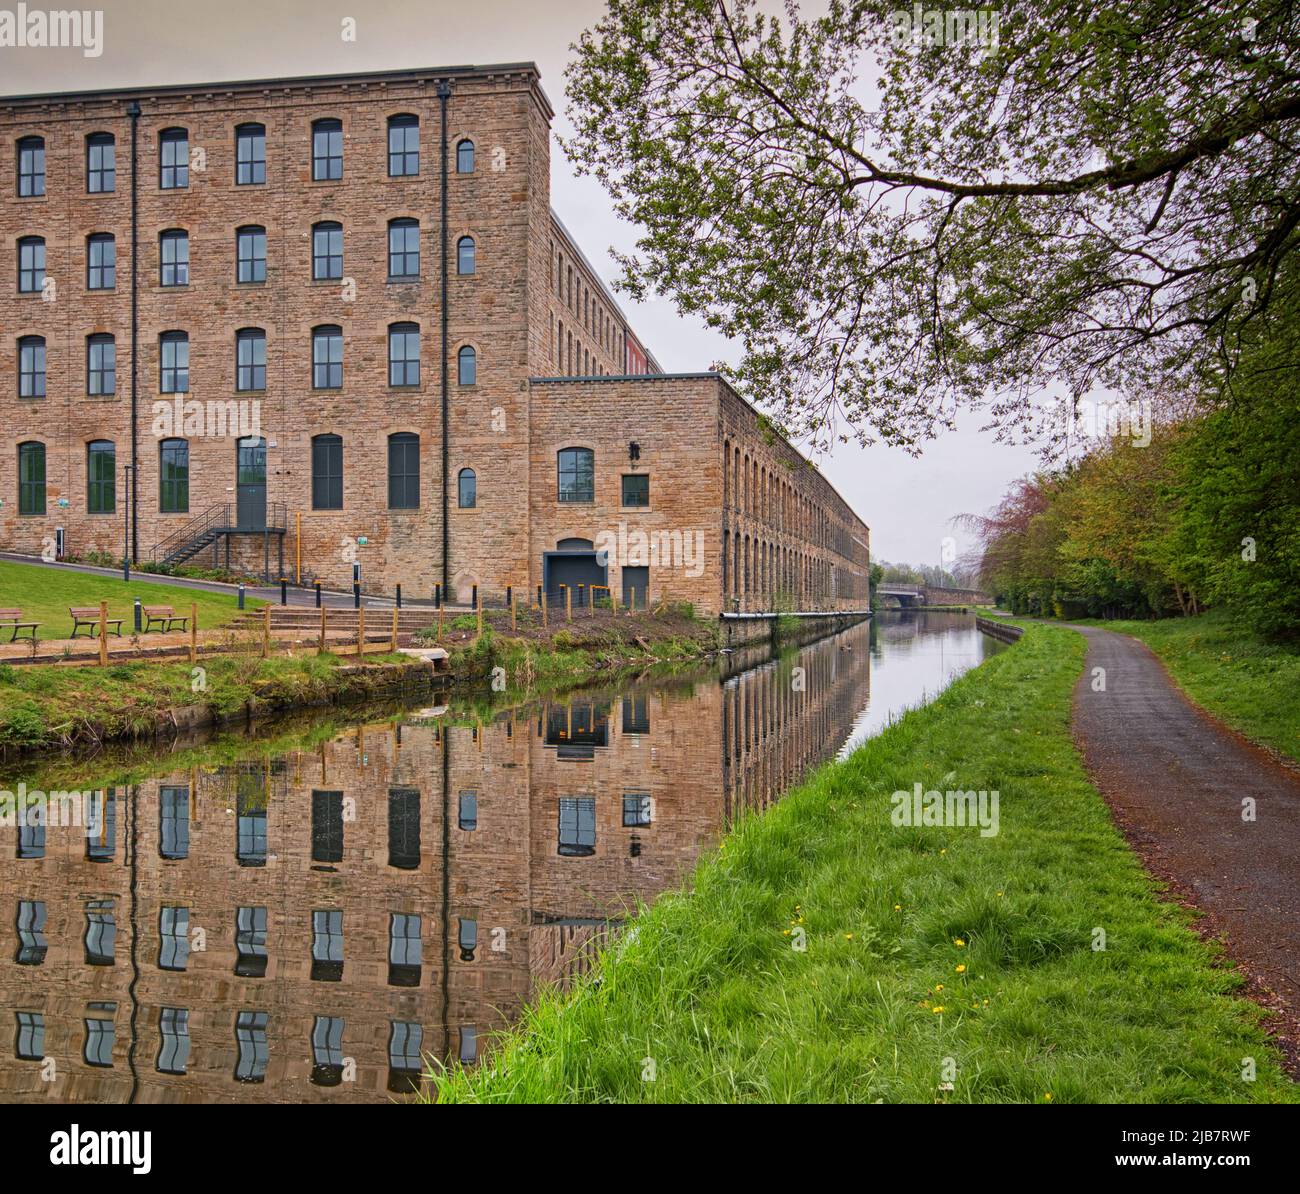 Reflexiones de Tunstill Mill en su condición renovada. El antiguo molino textil Smith y Nephew está al lado del canal de Leeds y Liverpool Foto de stock